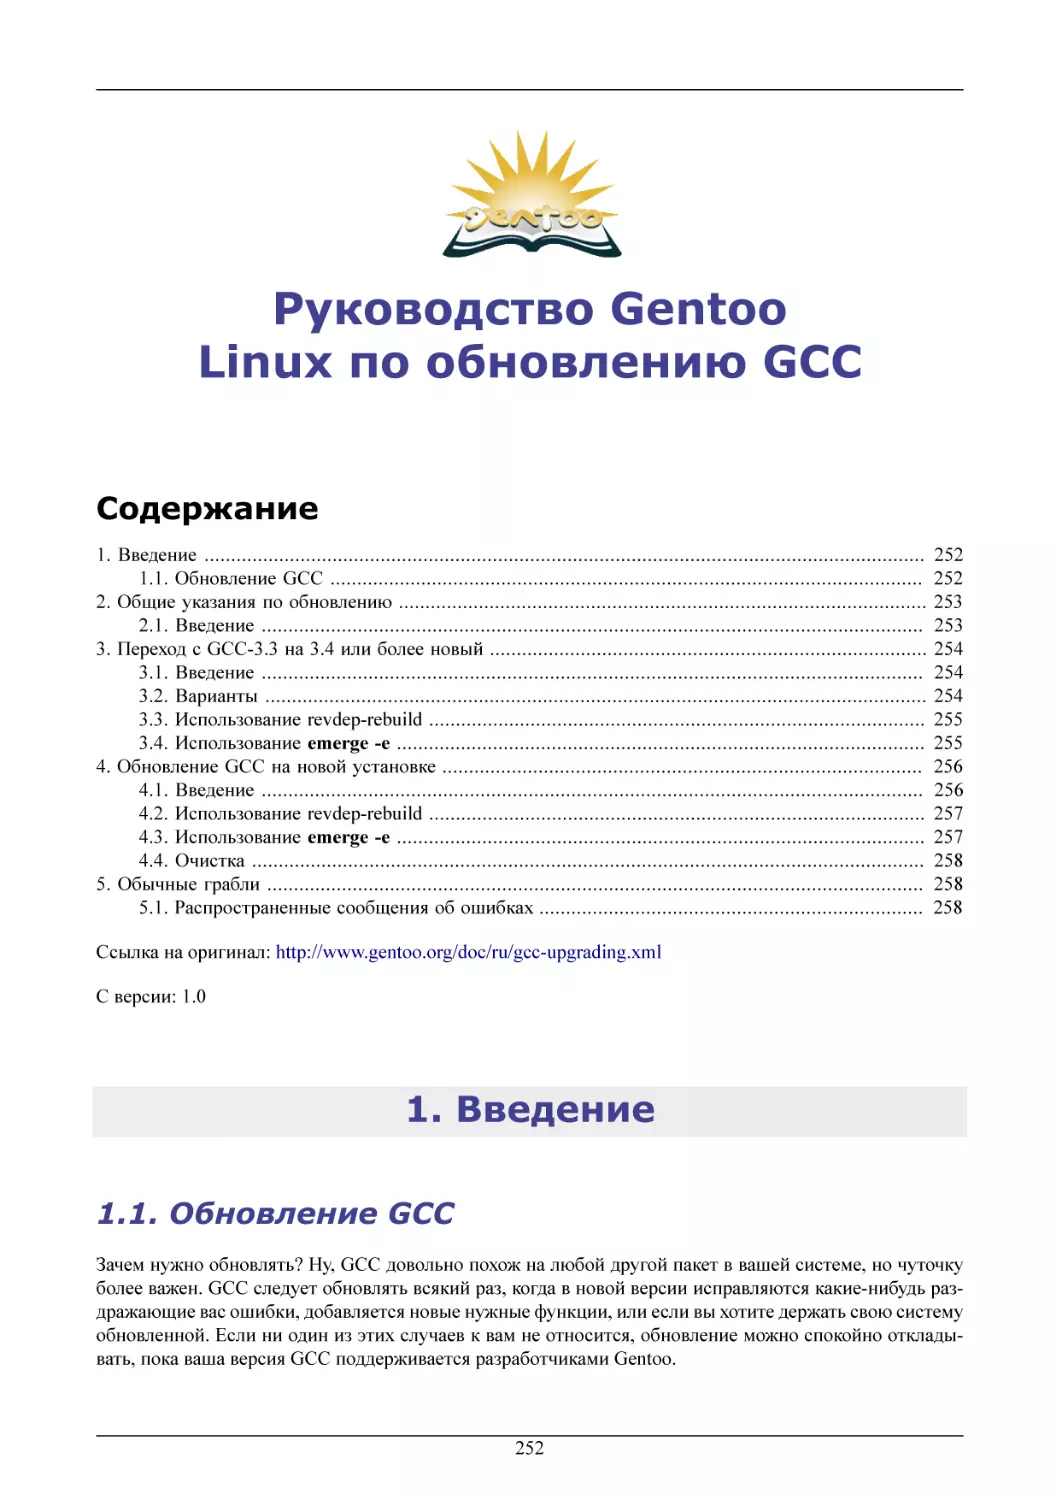 Руководство Gentoo Linux по обновлению GCC
Введение
Обновление GCC